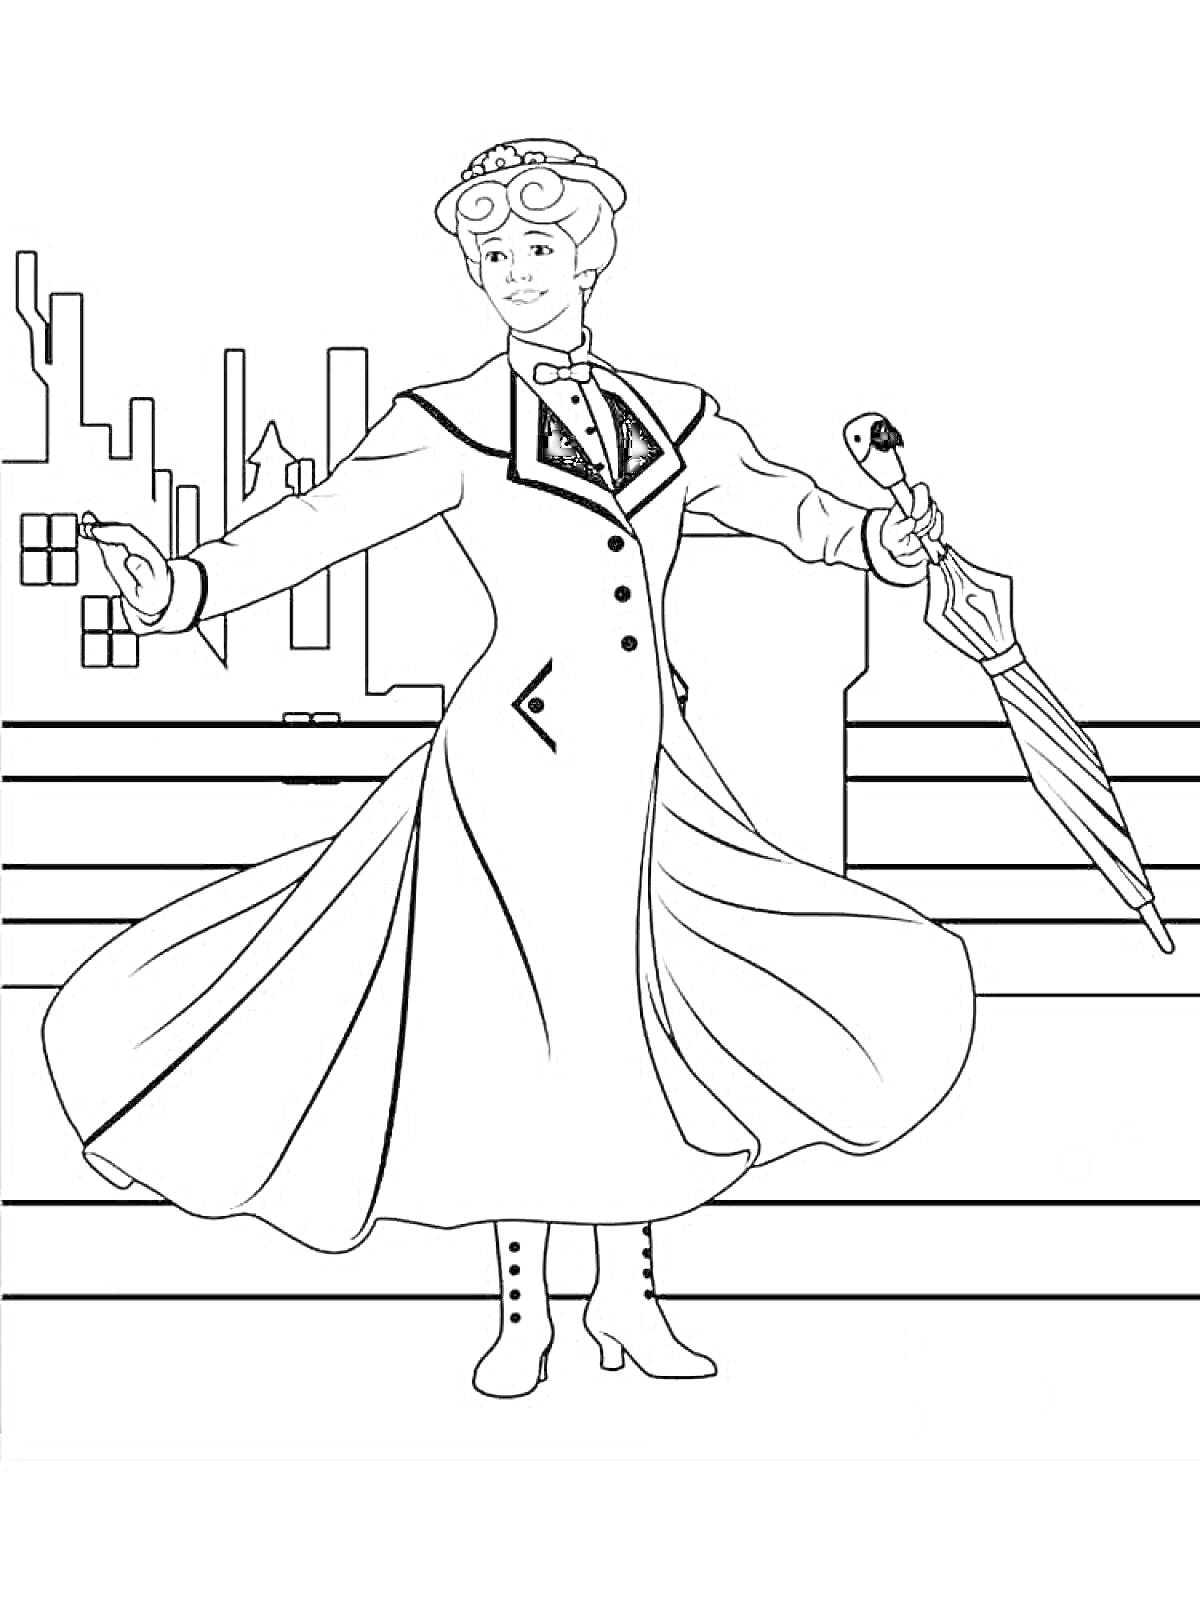 Мэри Поппинс в длинном пальто, с зонтом в руке, на фоне городских зданий и лестницы